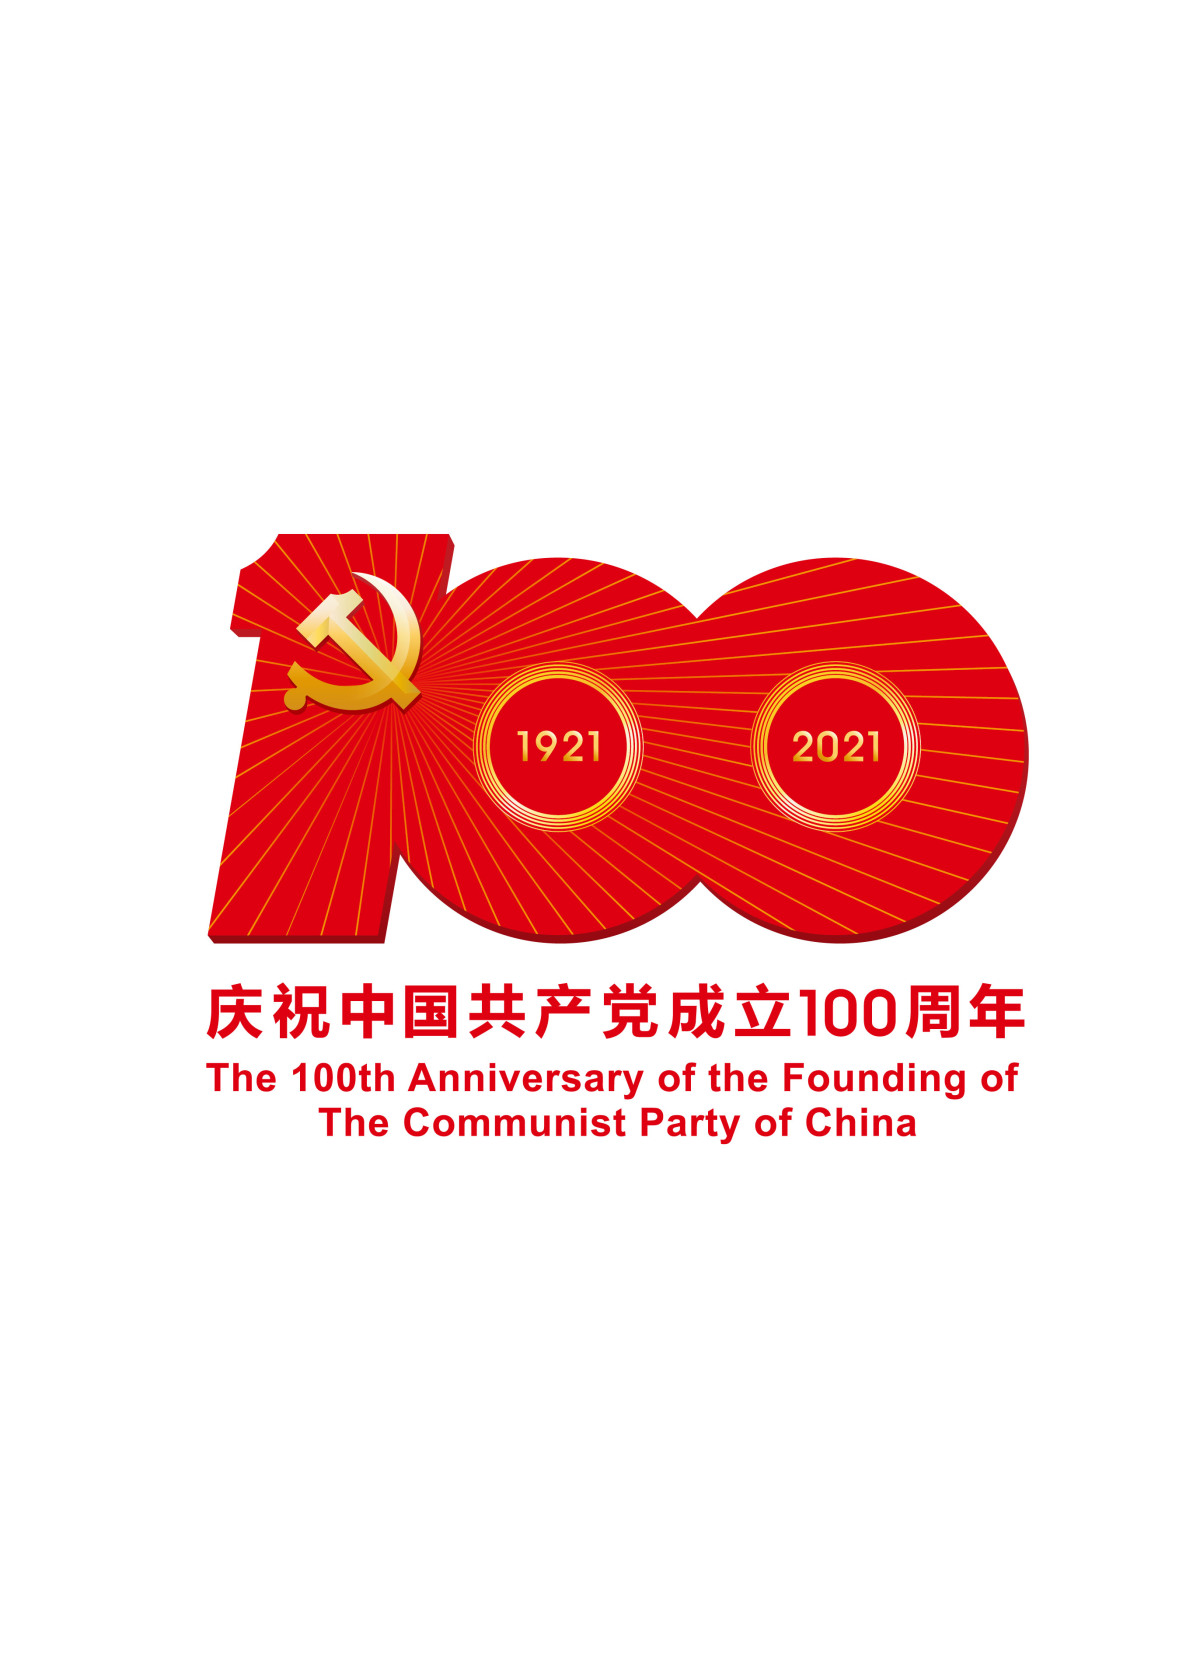 中国共产党成立100周年庆祝活动标识原版